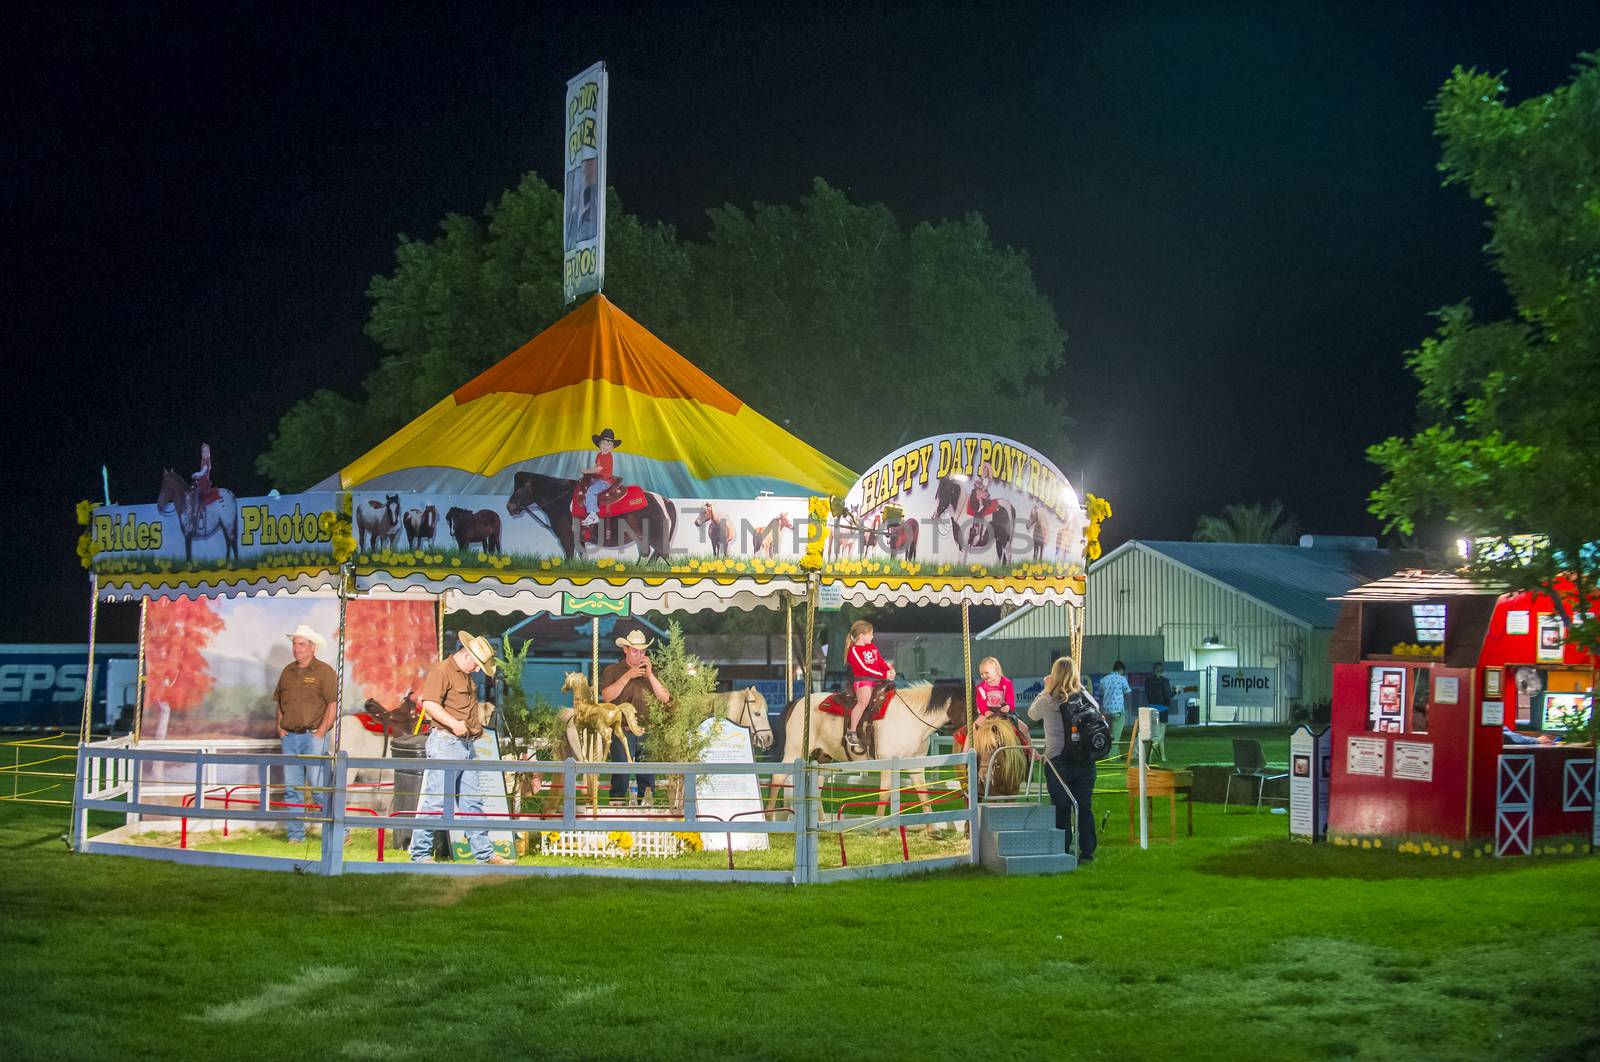 The Clark County Fair and Rodeo  by kobby_dagan